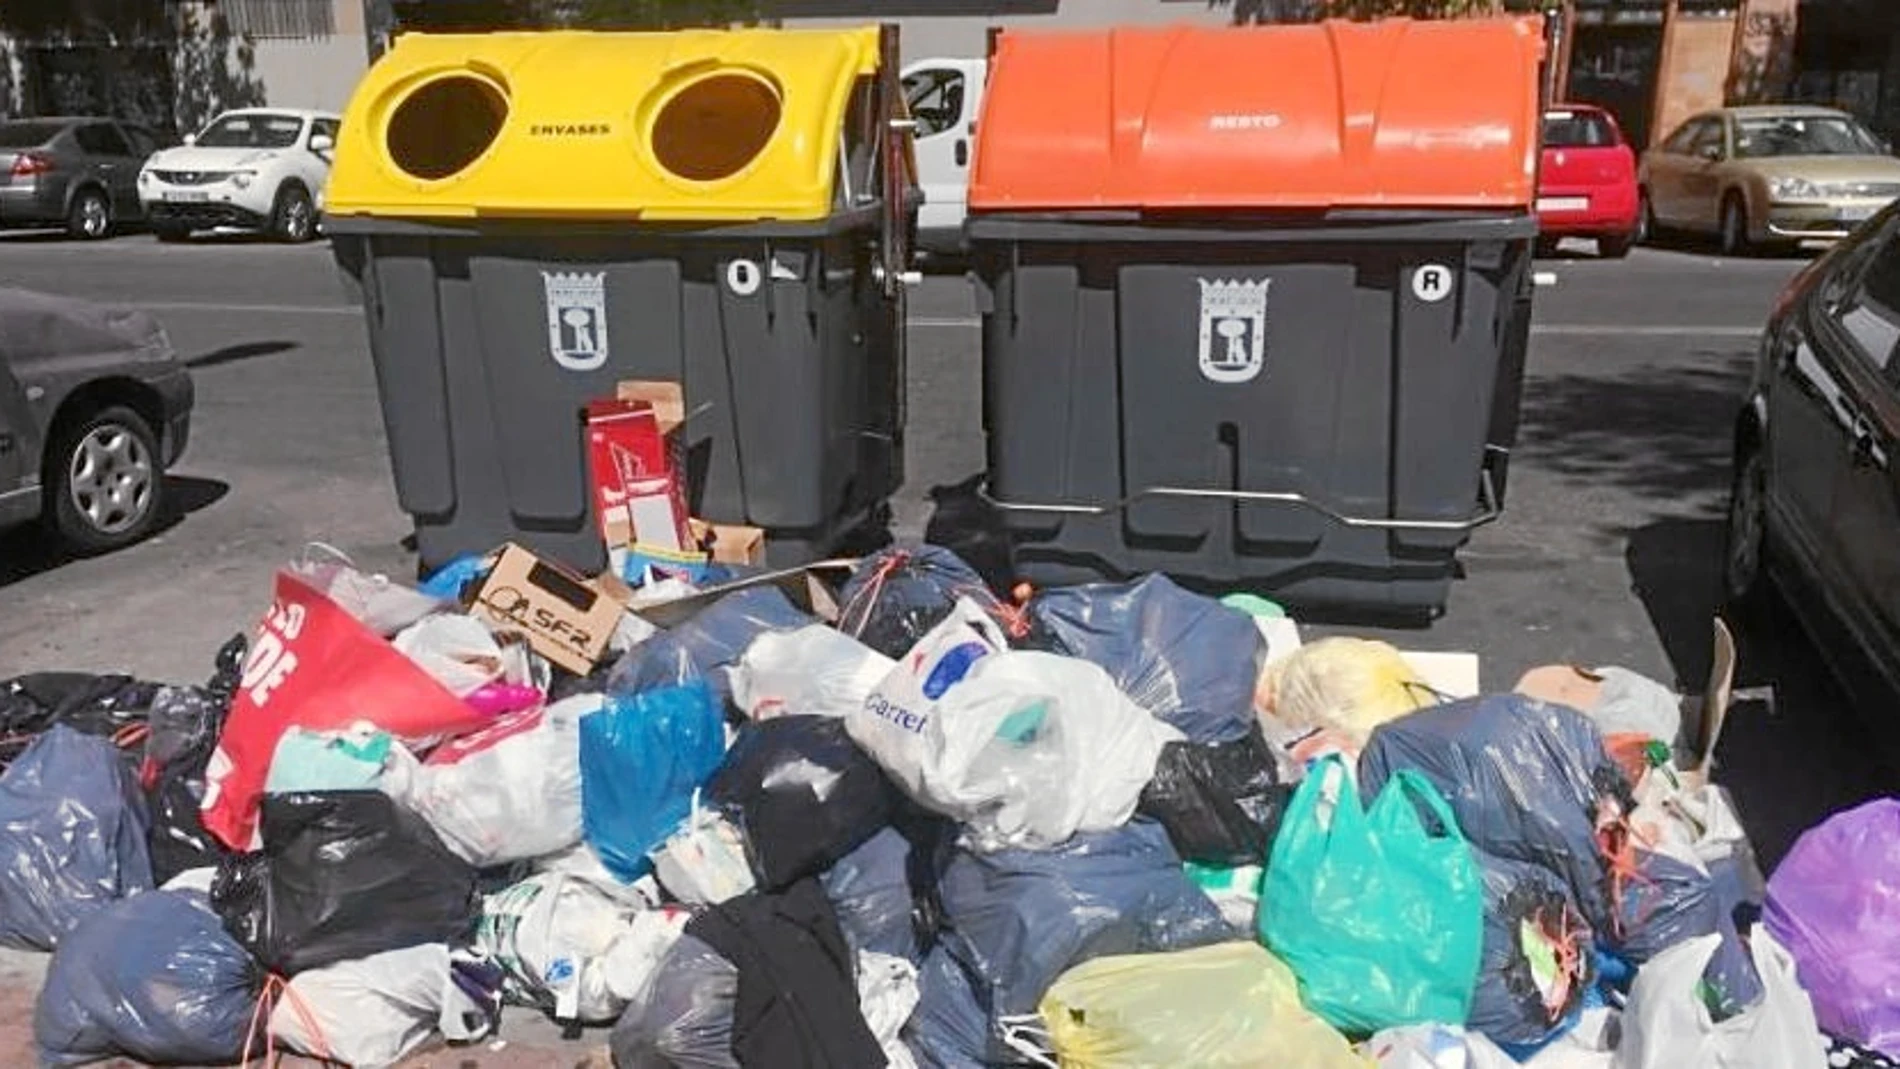 Fotografía realizada en la Avenida de Abrantes y colgada en redes para denunciar la basura que se acumula junto a los nuevos contenedores